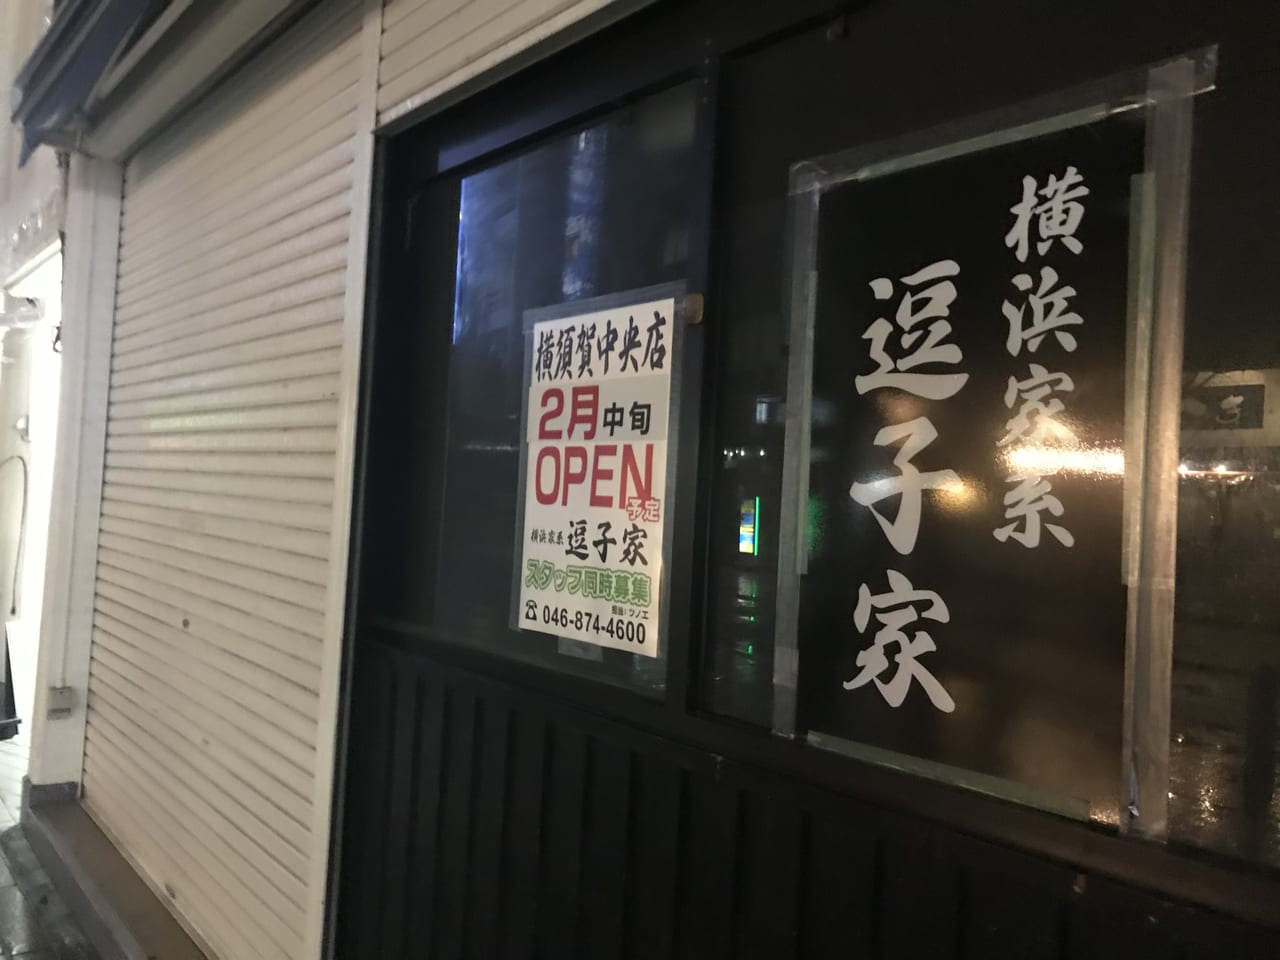 横須賀市 横浜家系ラーメンの 逗子屋 が横須賀中央に再オープンするそうです 号外net 横須賀市 三浦市